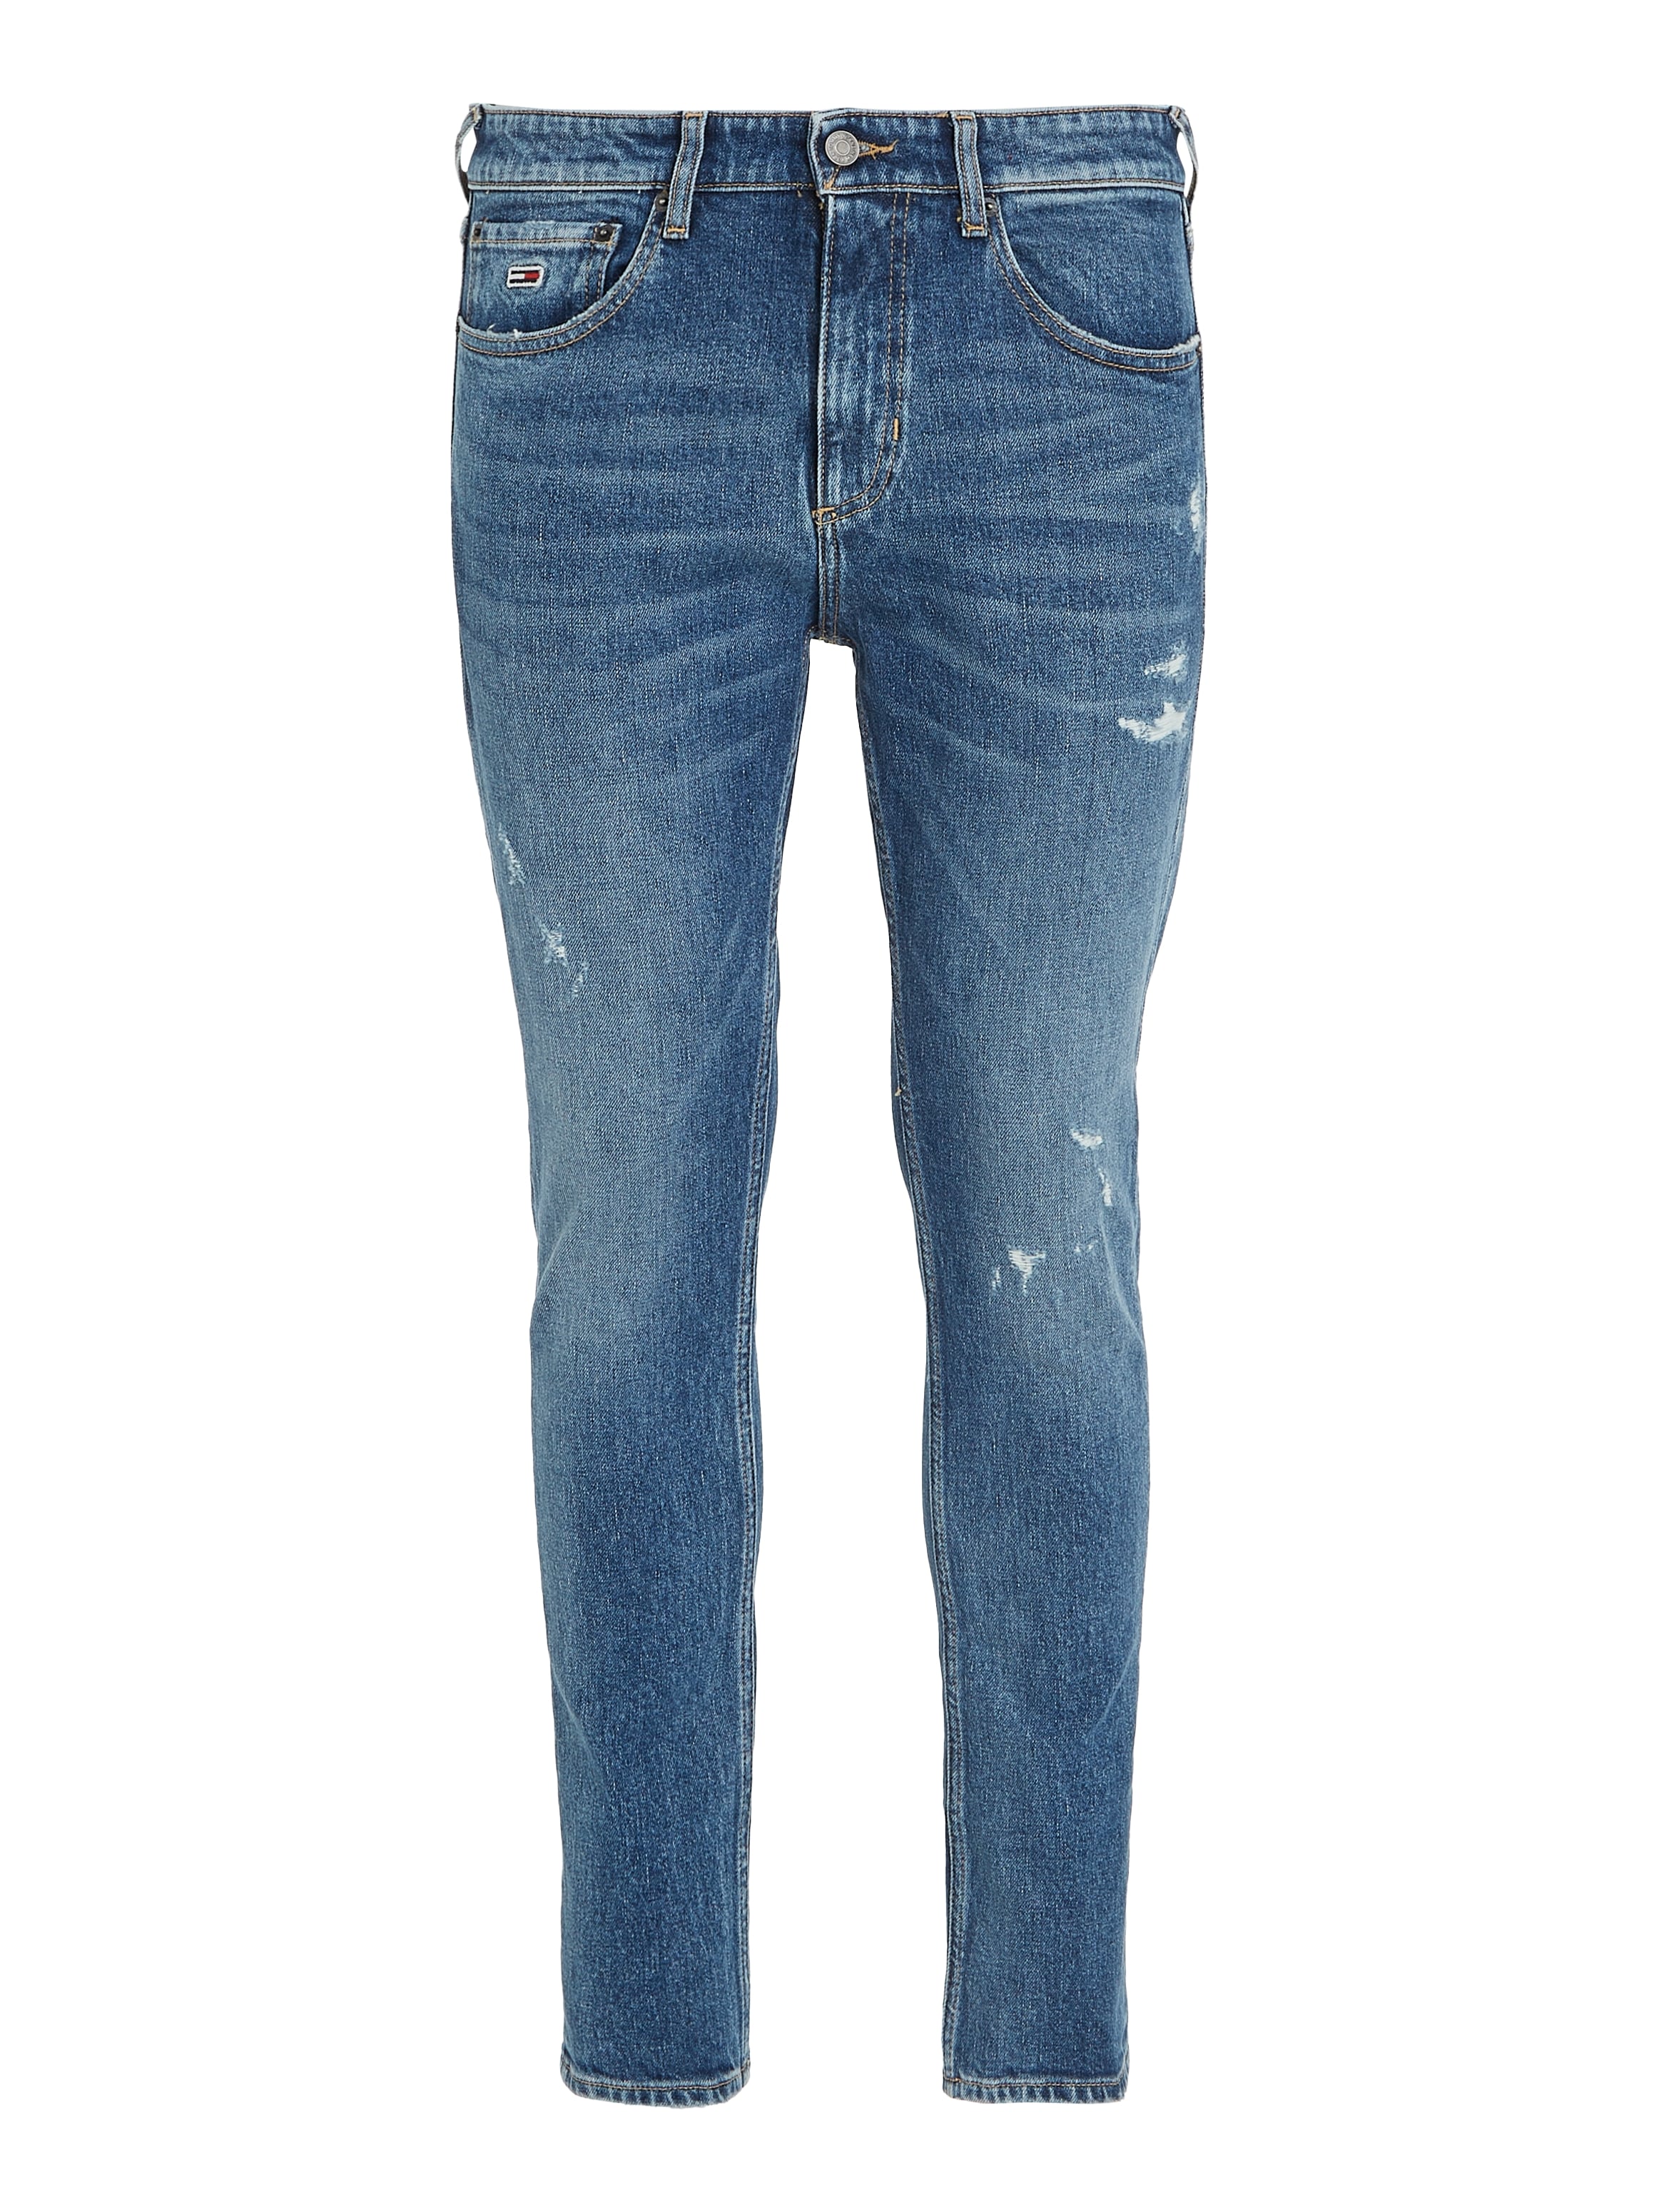 ♕ Tommy Jeans Slim-fit-Jeans »SCANTON Y DG8136« versandkostenfrei auf